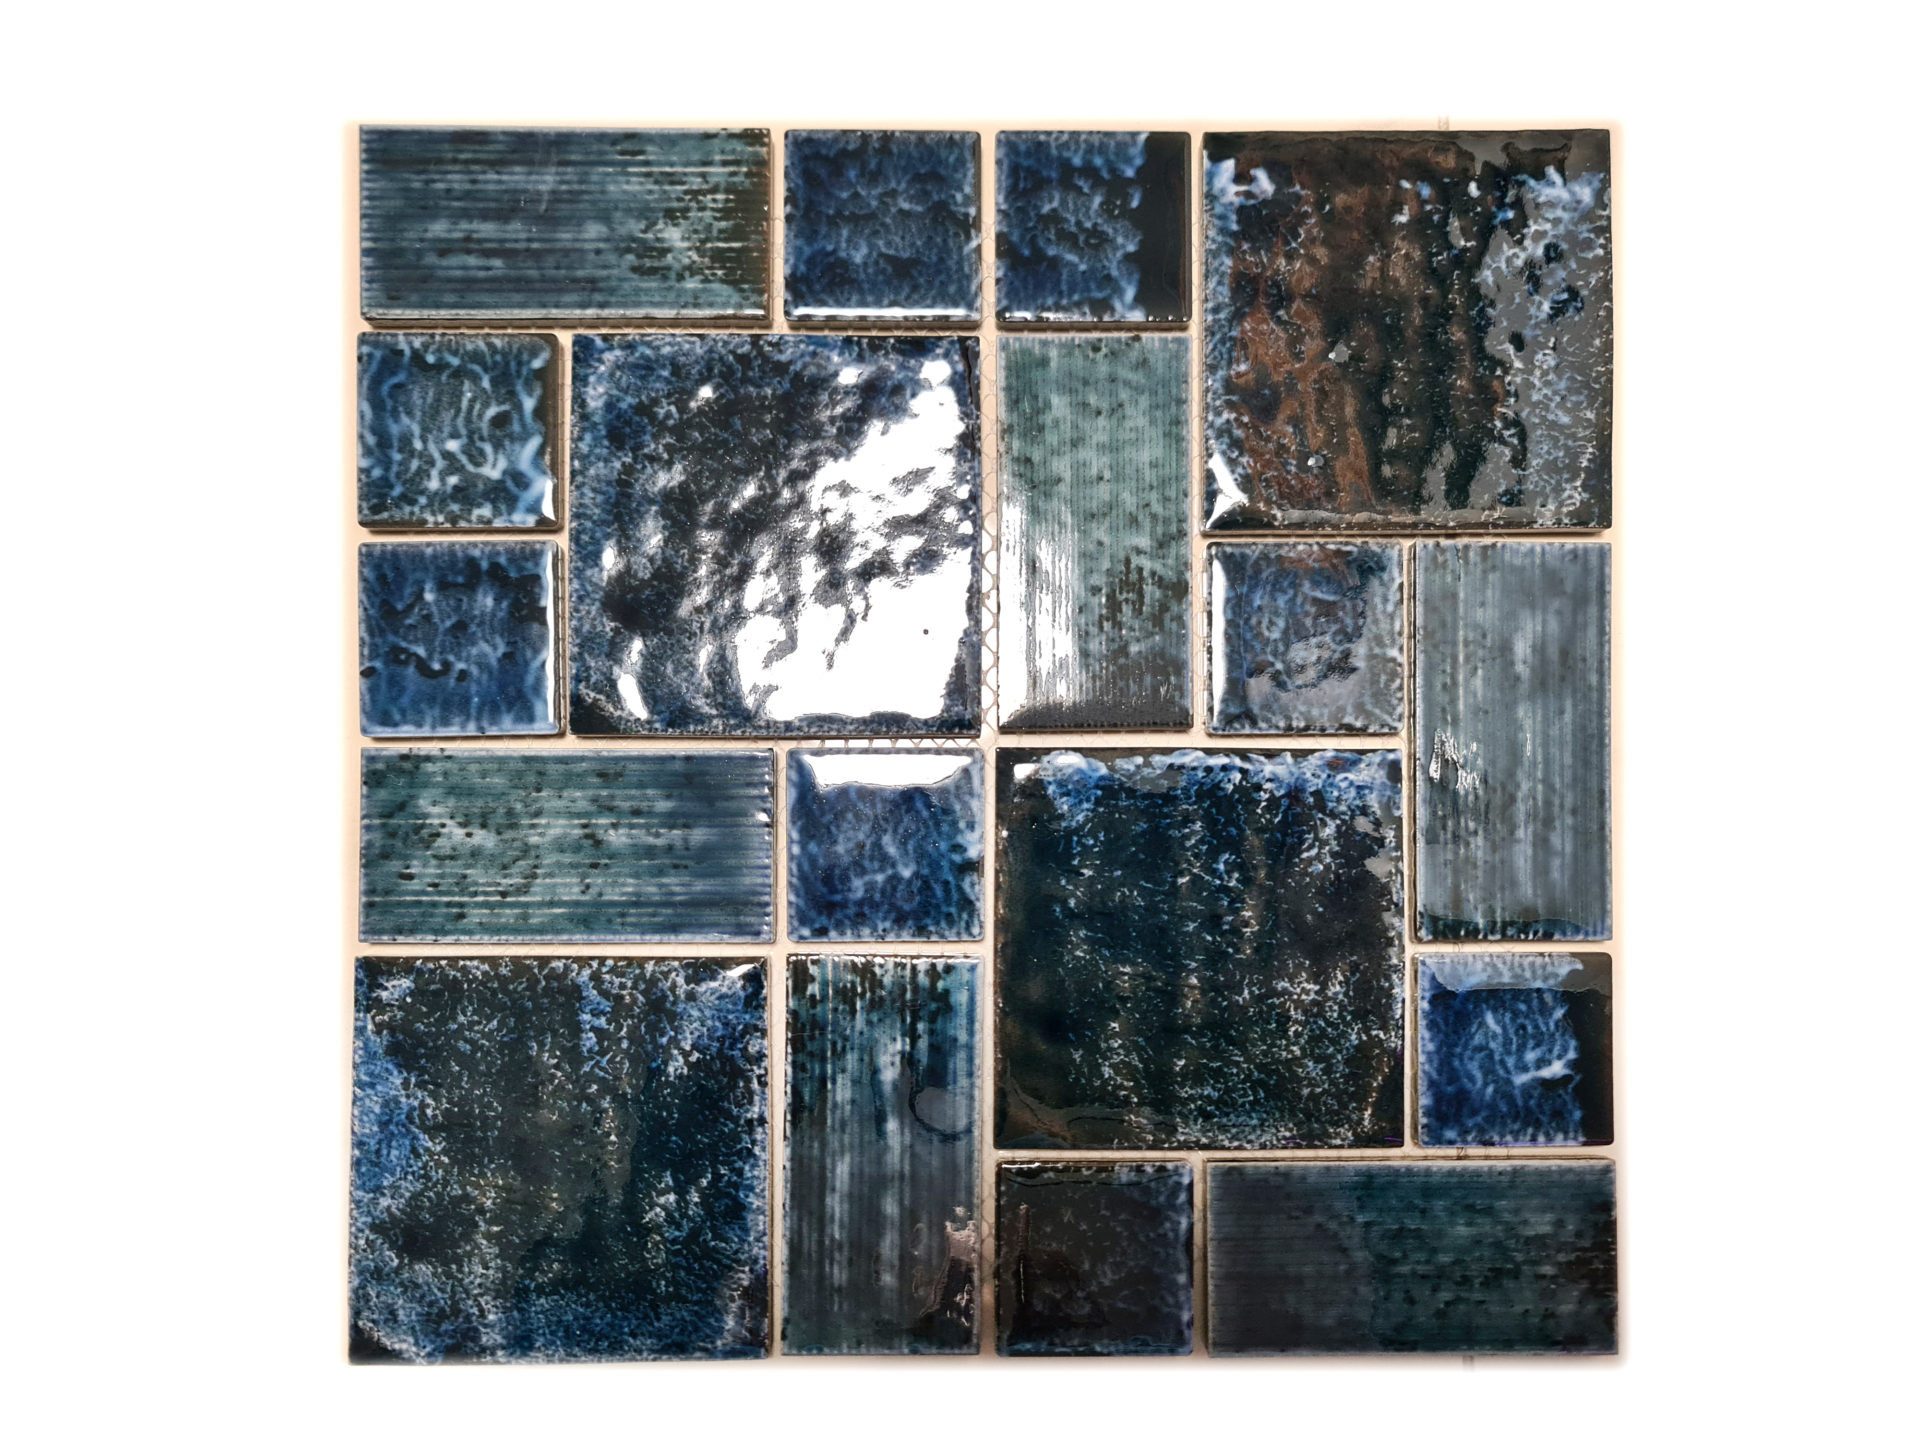 Mosani Mosaikfliesen Mosaikfliese Keramik Mosaik Vintage Retro blau grün